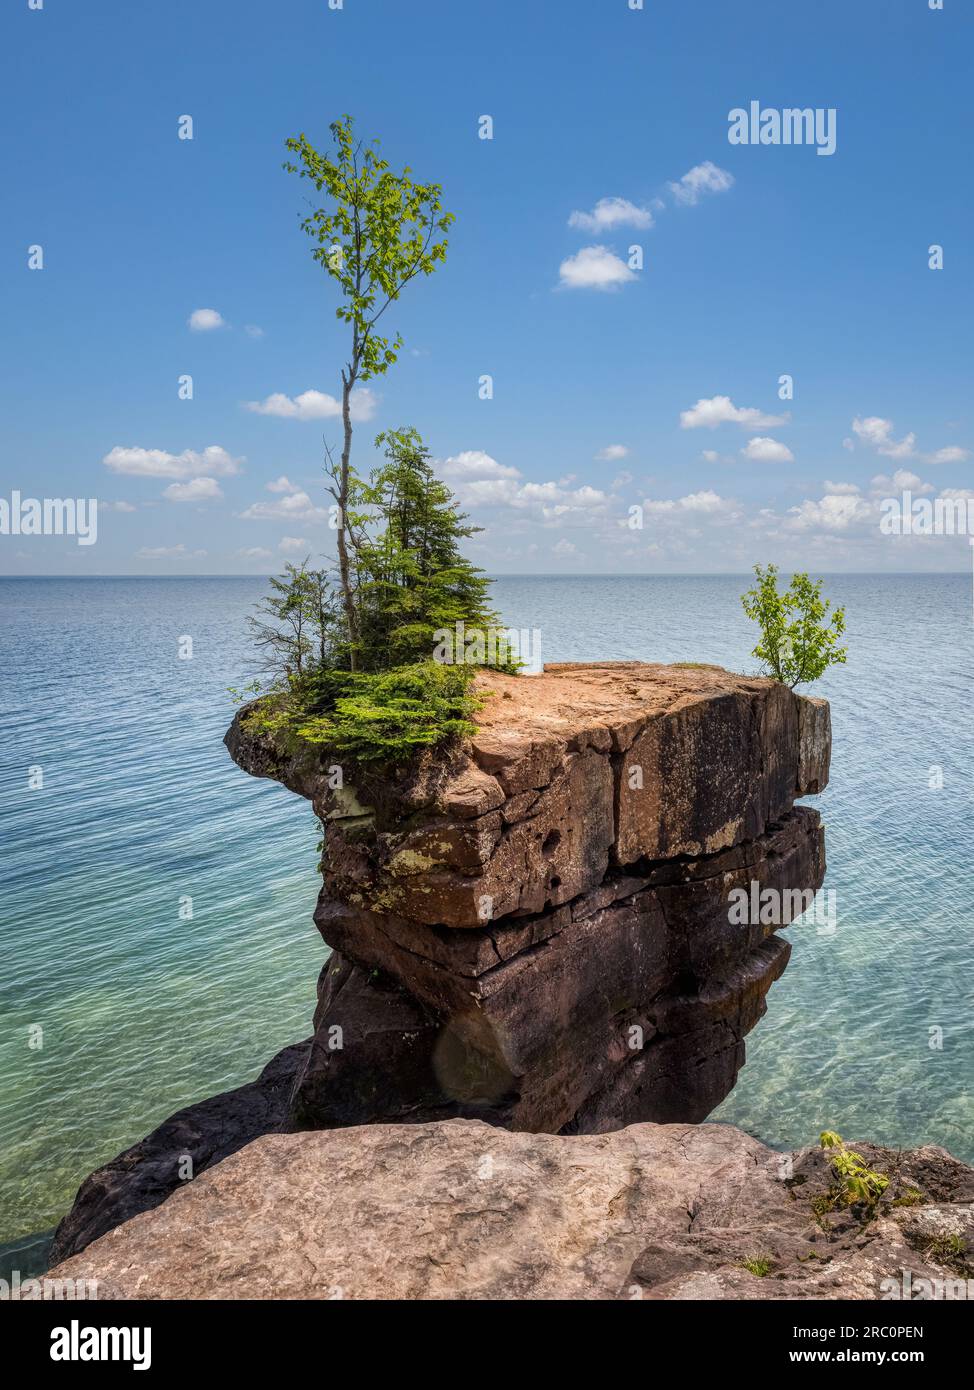 Costa rocciosa del lago Superior nel Big Bay State Park a la Pointe, sull'isola Madeline nell'Apostle Islands National Lakeshore nel Wisconsin USA Foto Stock